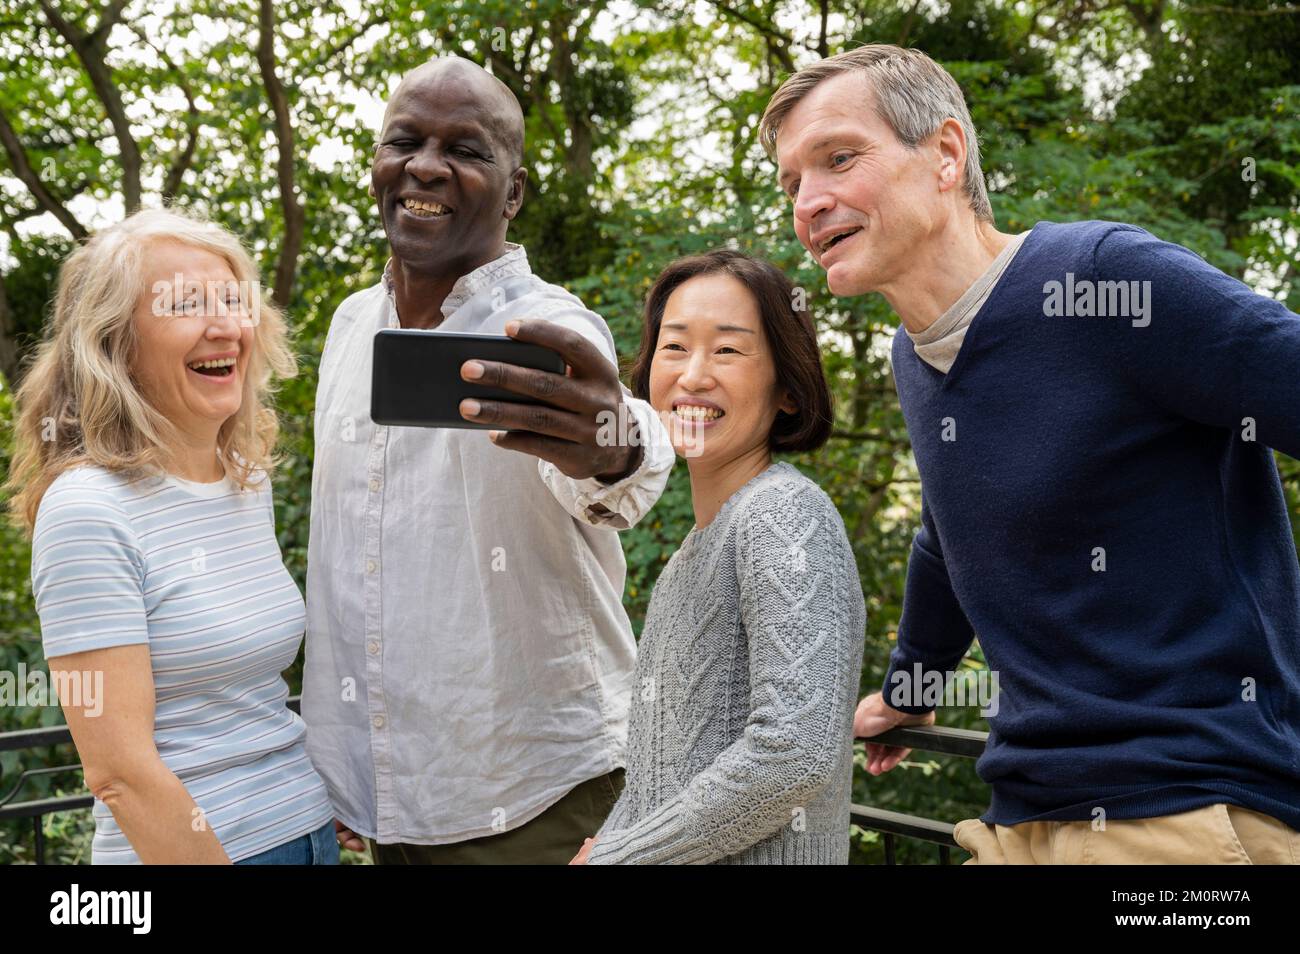 Porträt verschiedener Paare, die Spaß haben, während sie ein Selfie im öffentlichen Park machen Stockfoto